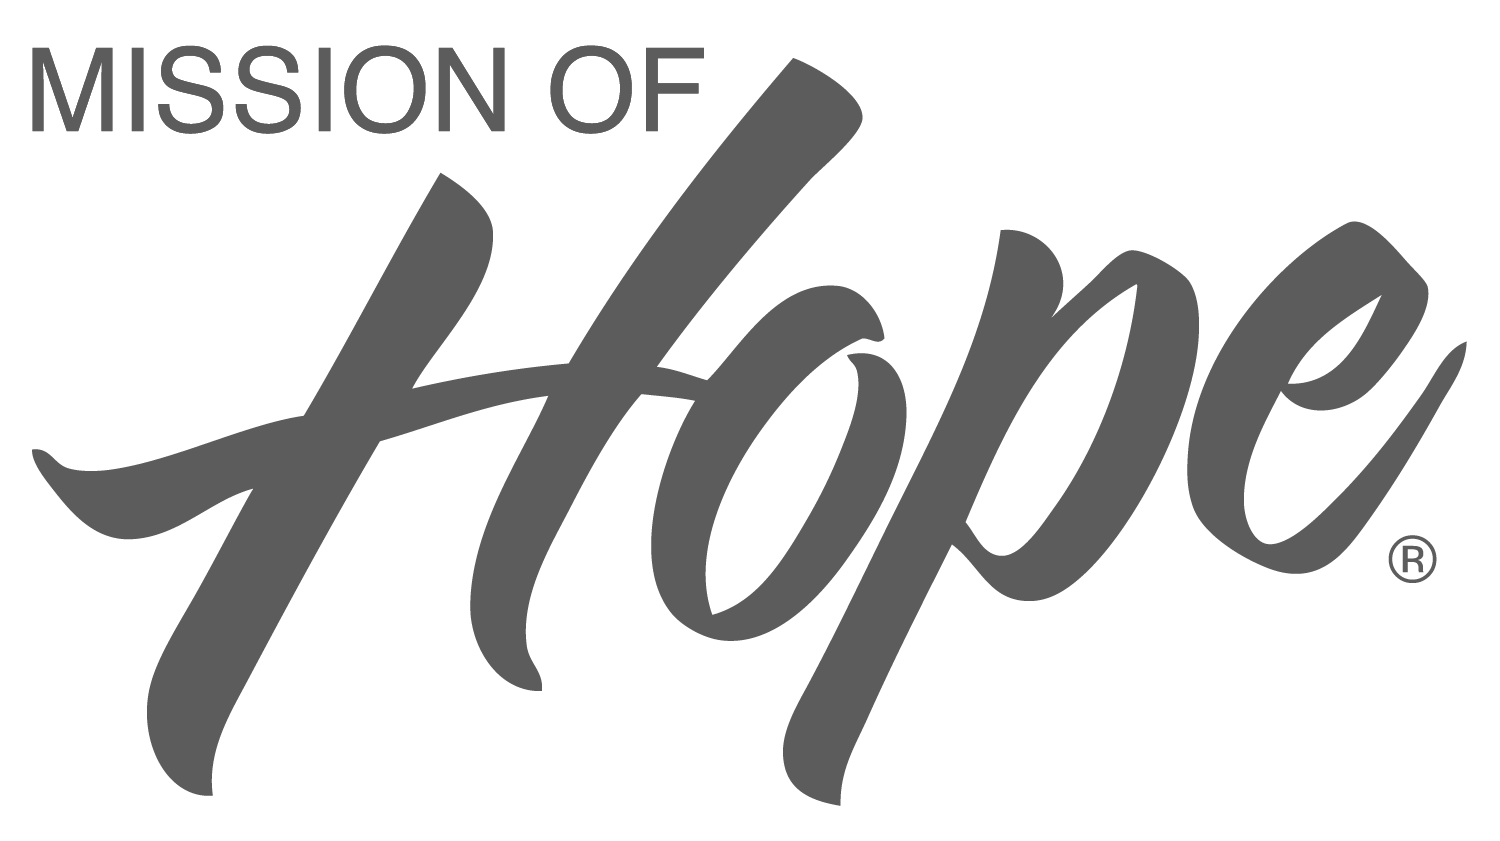 Mission of Hope Logo